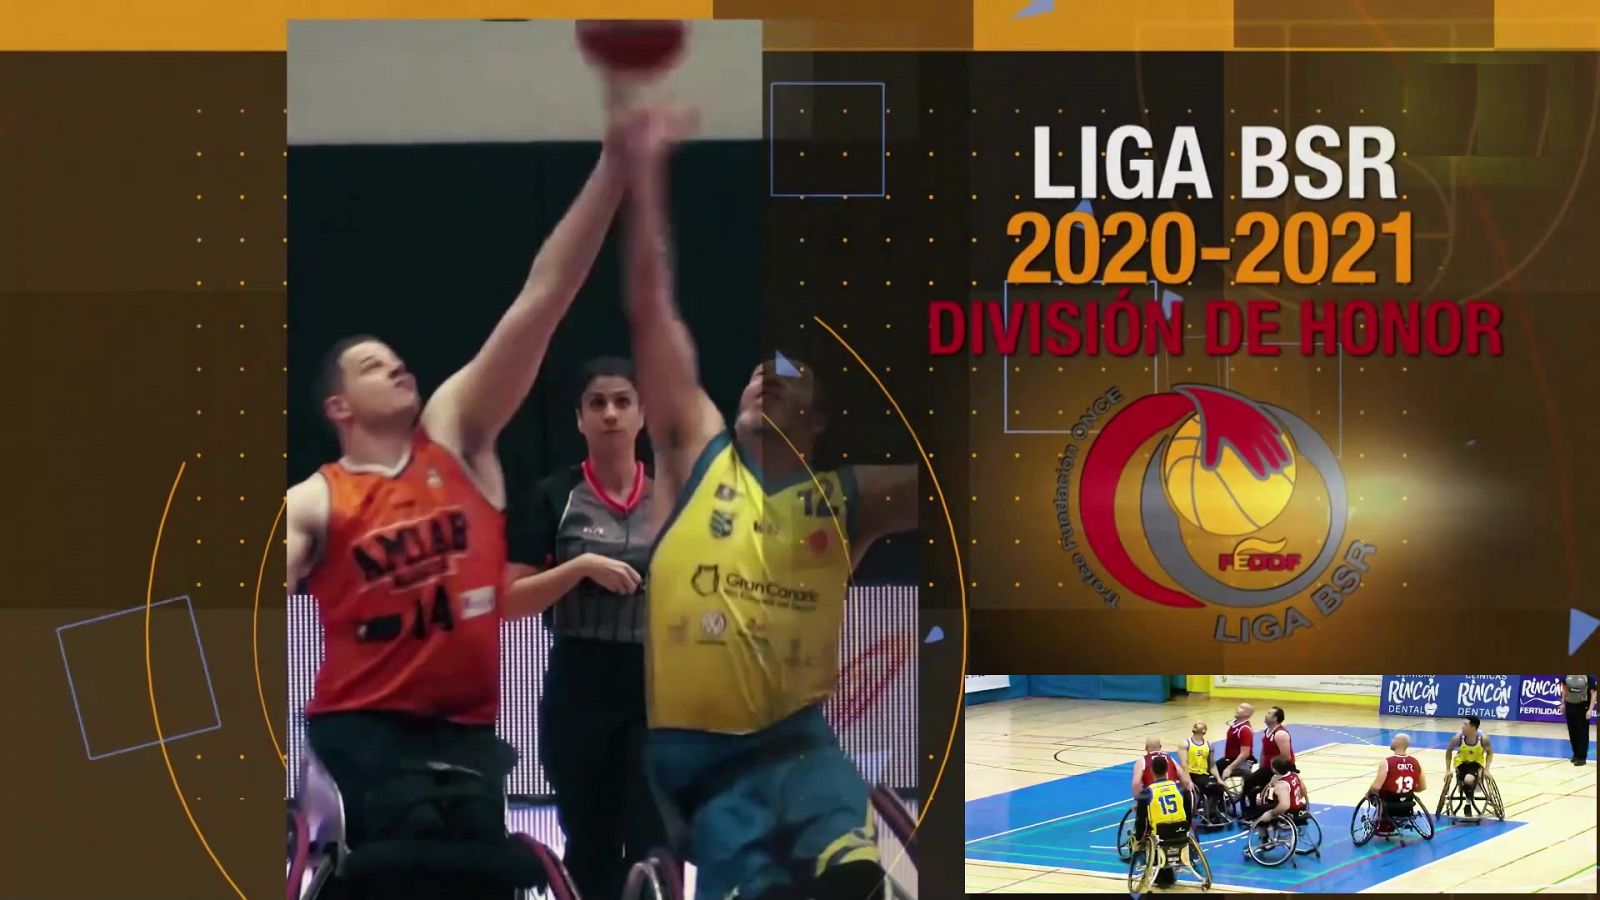 Baloncesto en silla de ruedas - Liga BSR División de Honor. Resumen Jornada 5 - RTVE.es